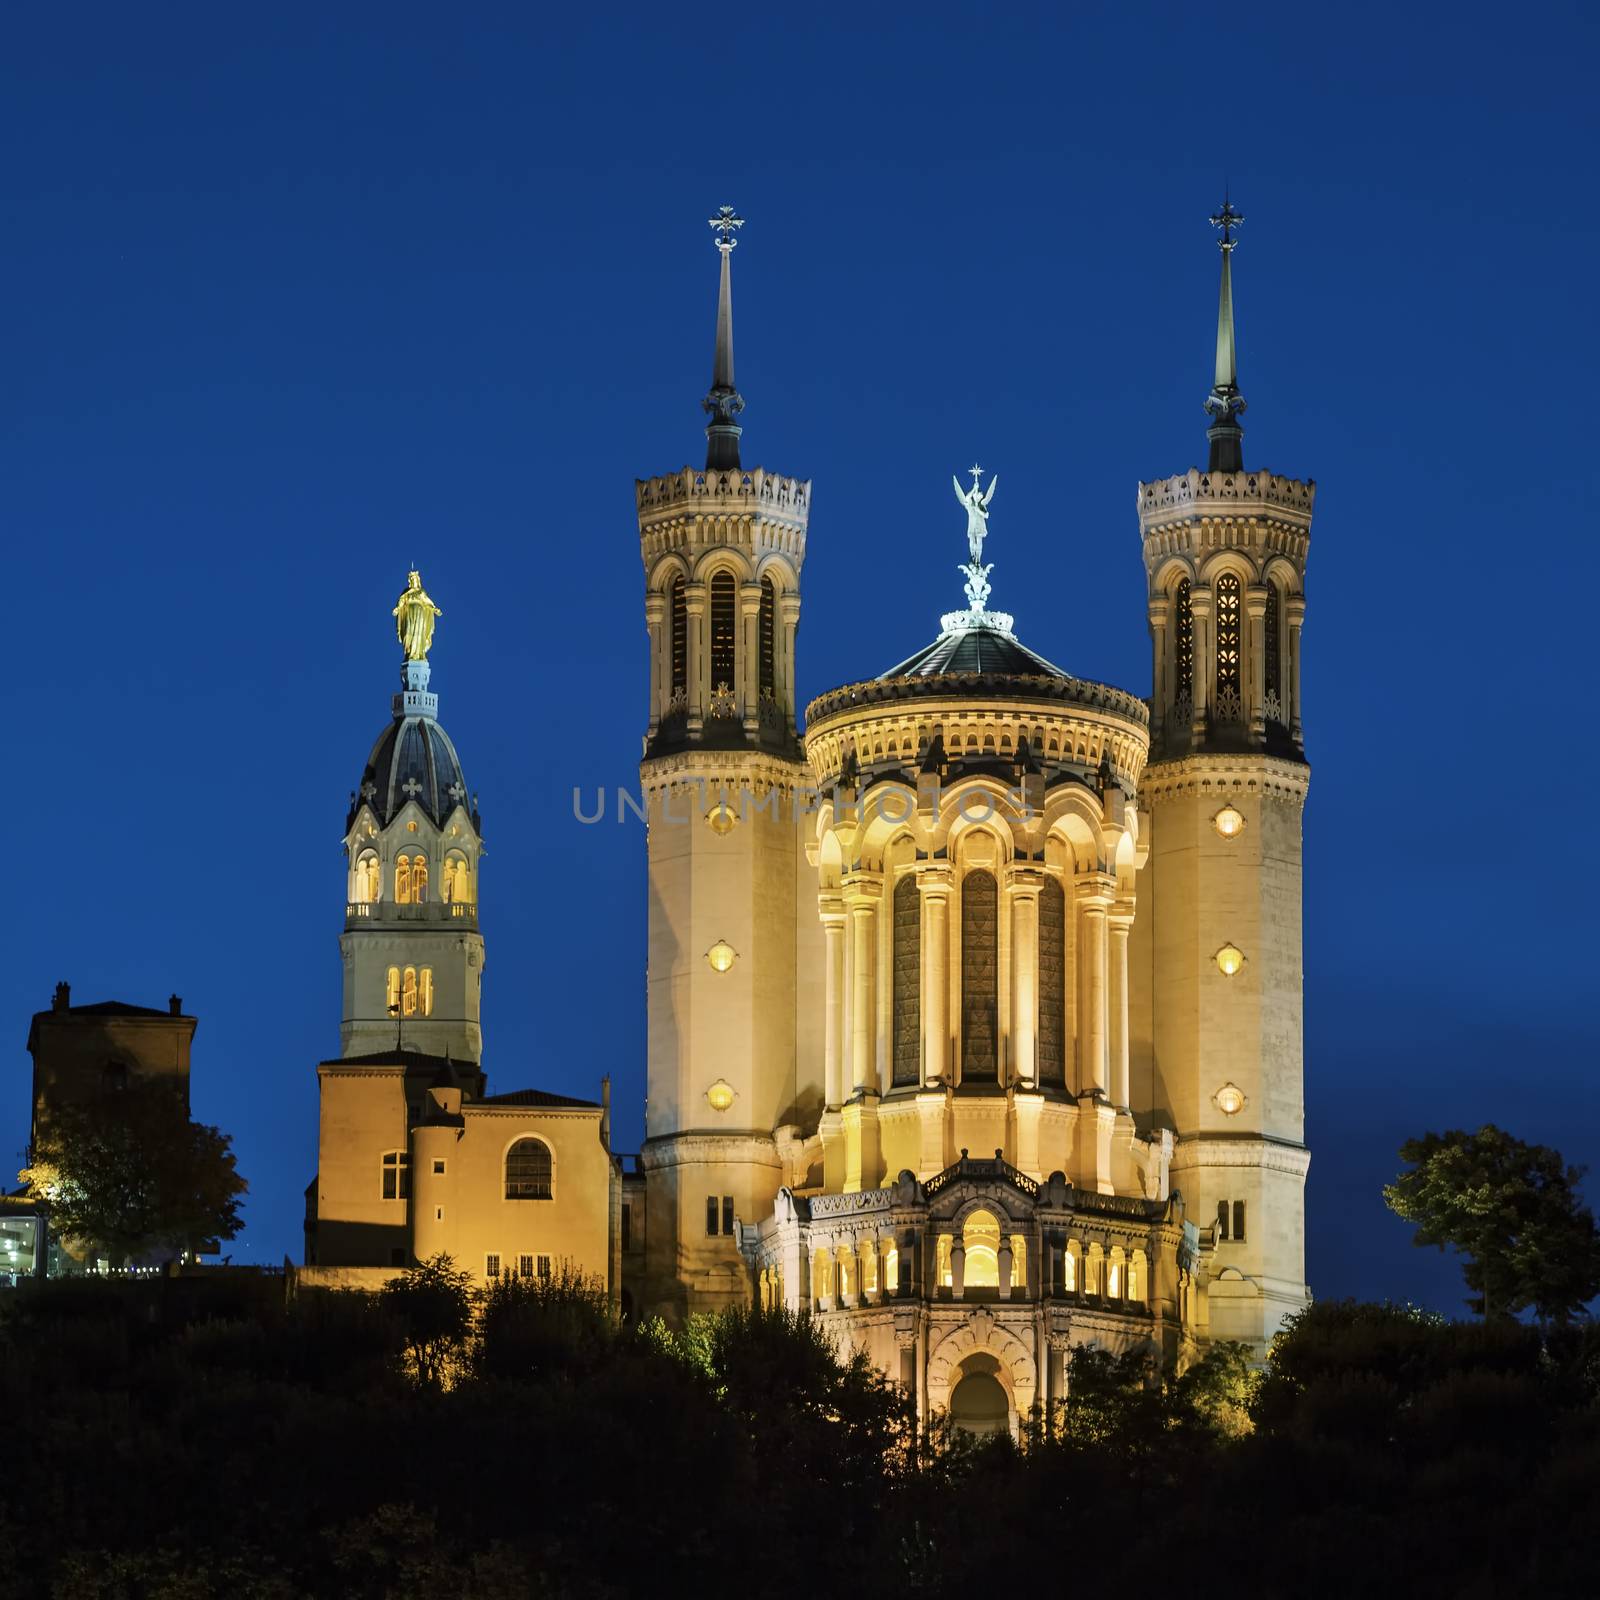 Basilica Notre Dame de fourviere by vwalakte